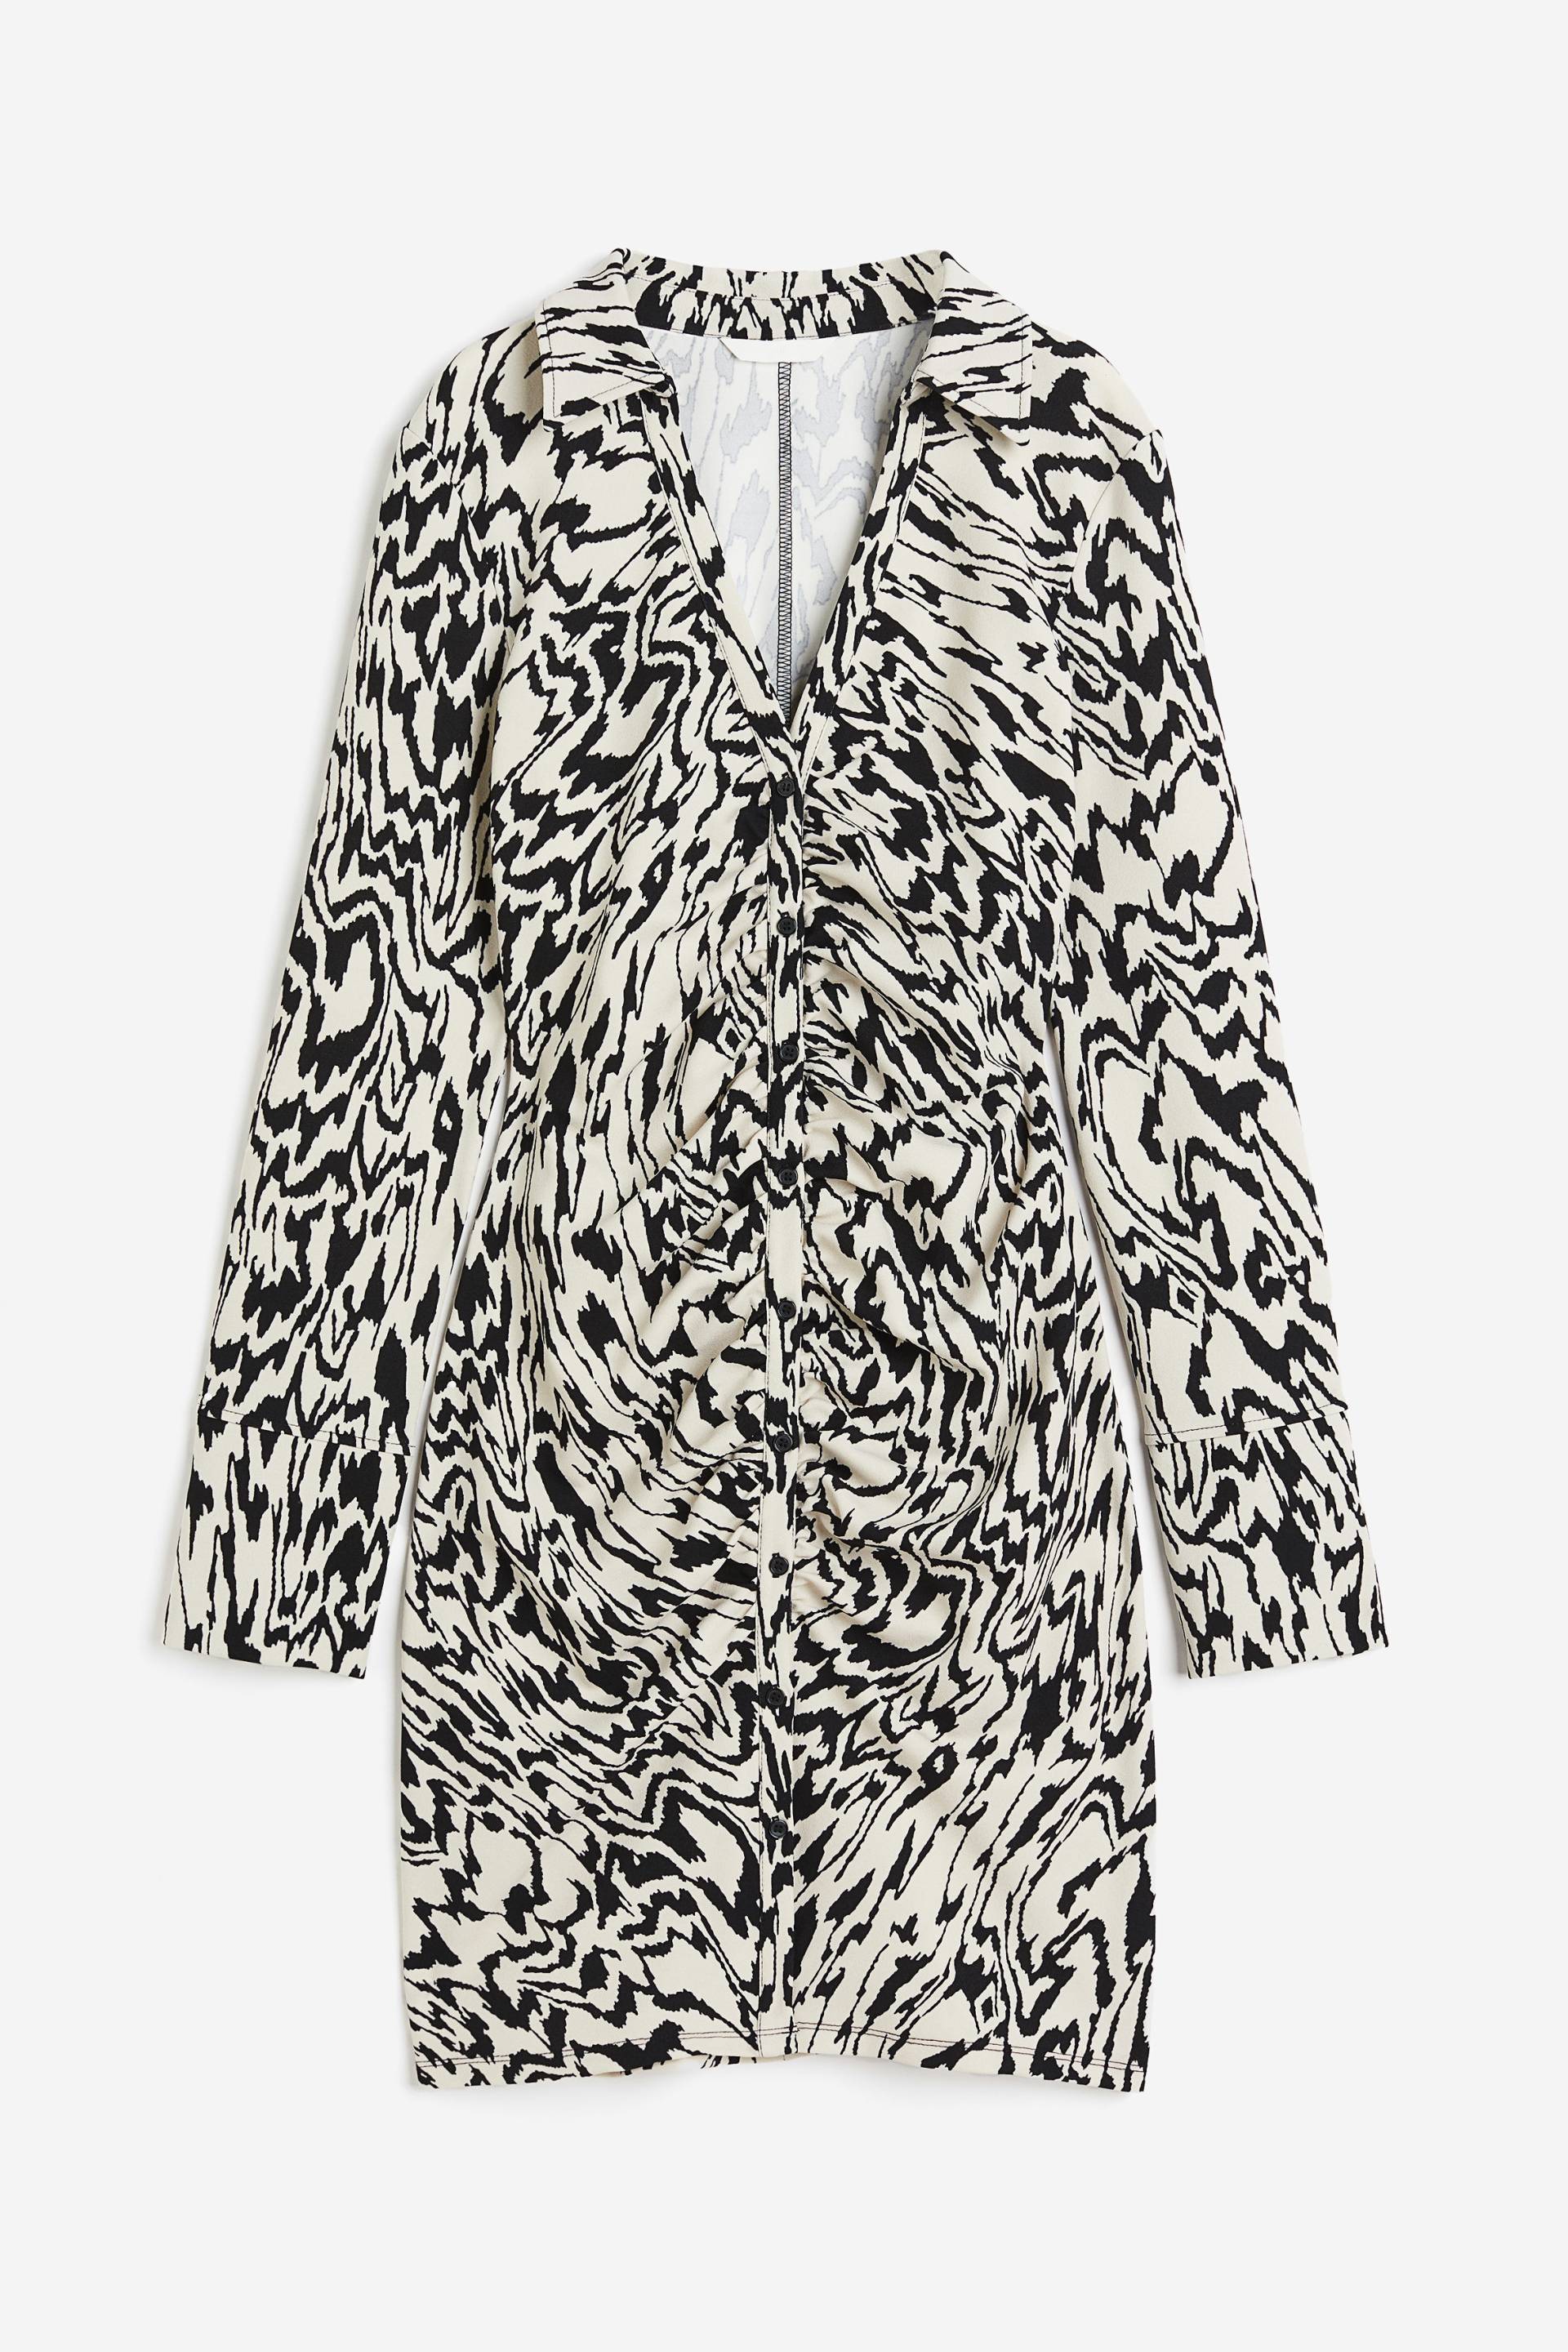 H&M Drapiertes Blusenkleid Cremefarben/Zebramuster, Alltagskleider in Größe S. Farbe: Cream/zebra print von H&M